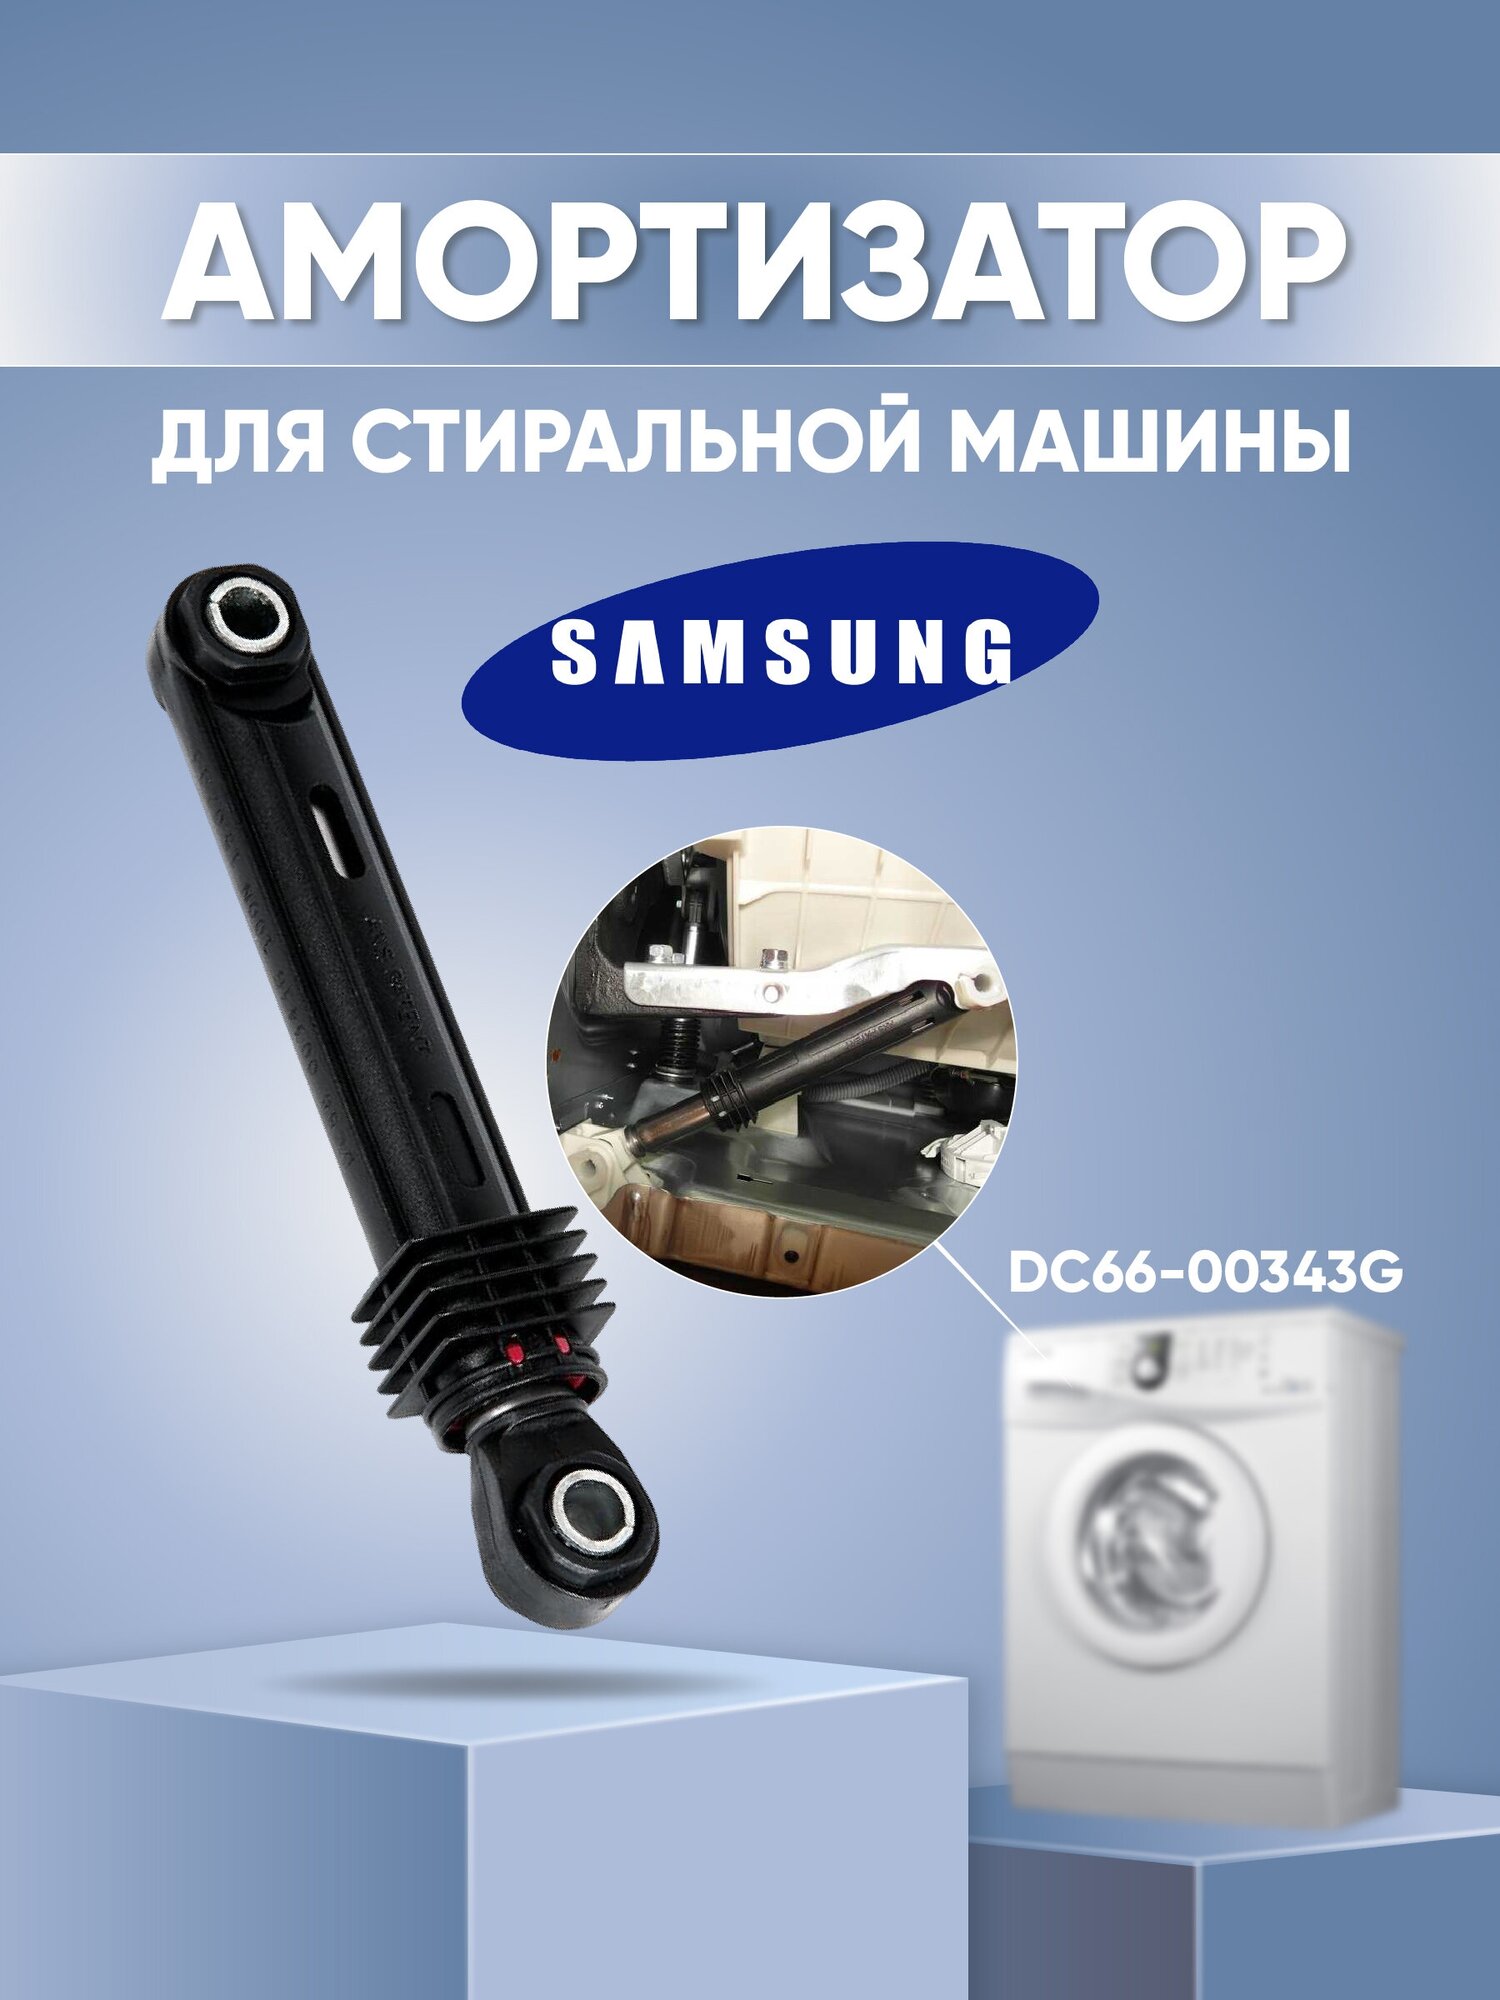 Амортизатор для стиральной машины Samsung 100N DC66-00343G